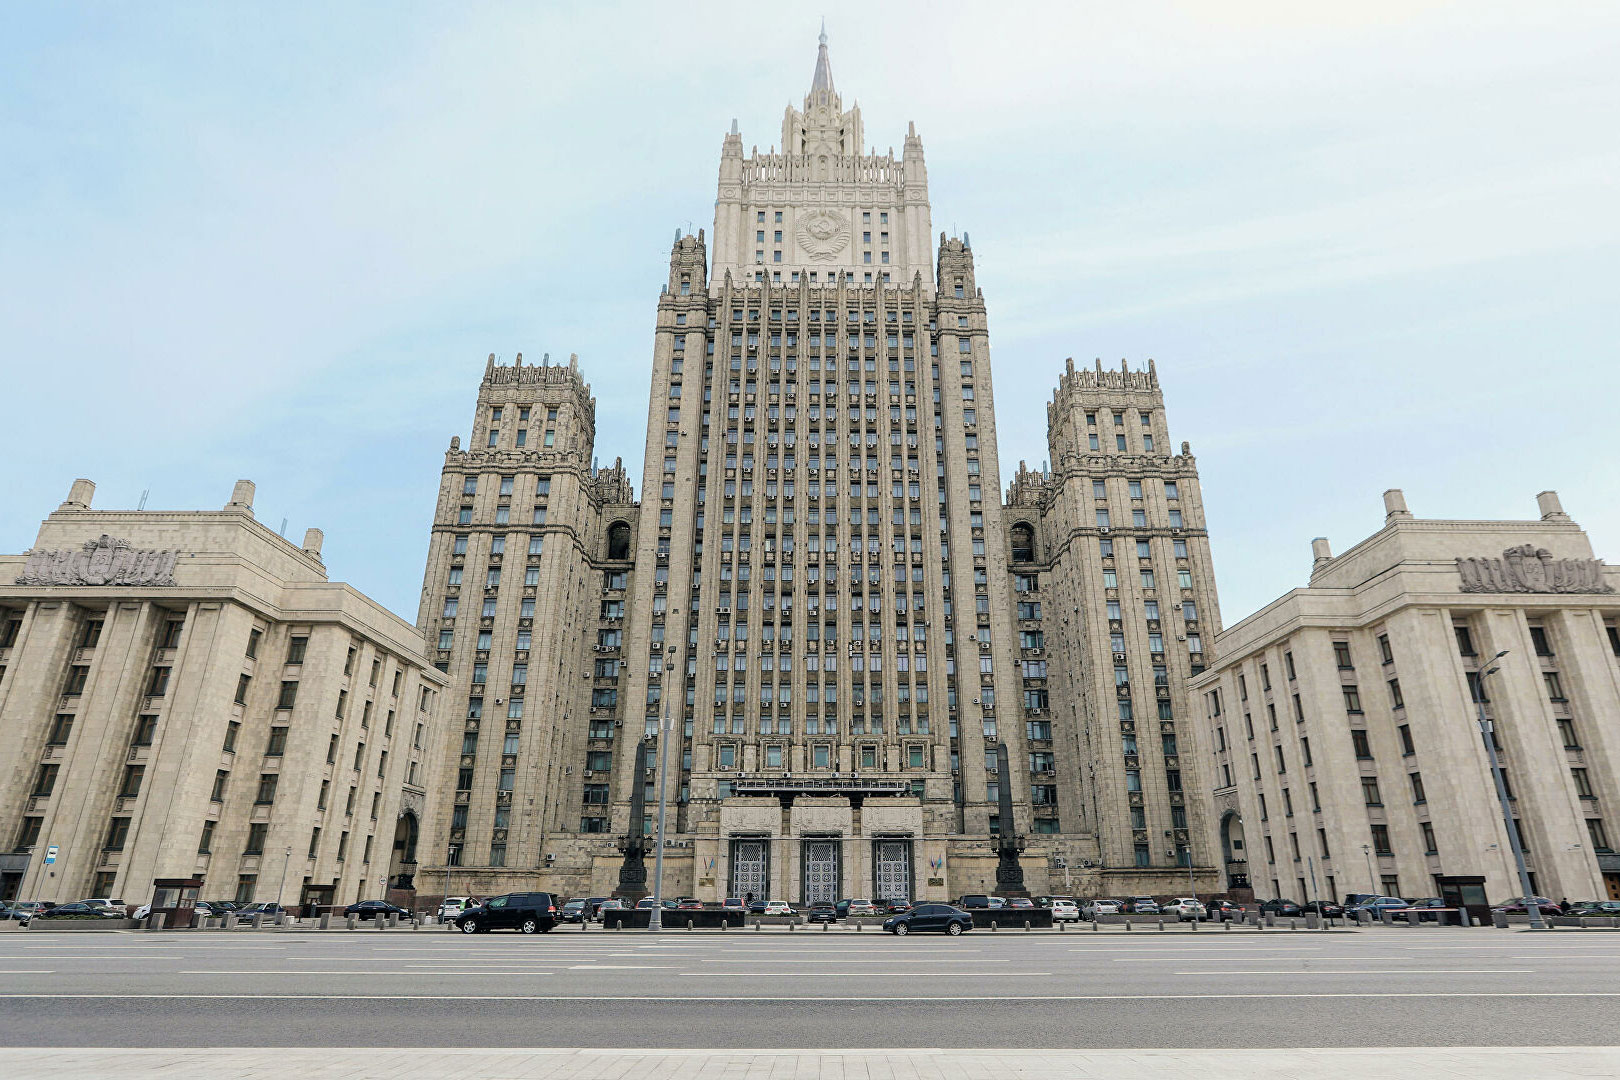 ՌԴ ԱԳՆ. Ռուս խաղաղապահներին ուղղված քննադատություններն արդարացված չեն